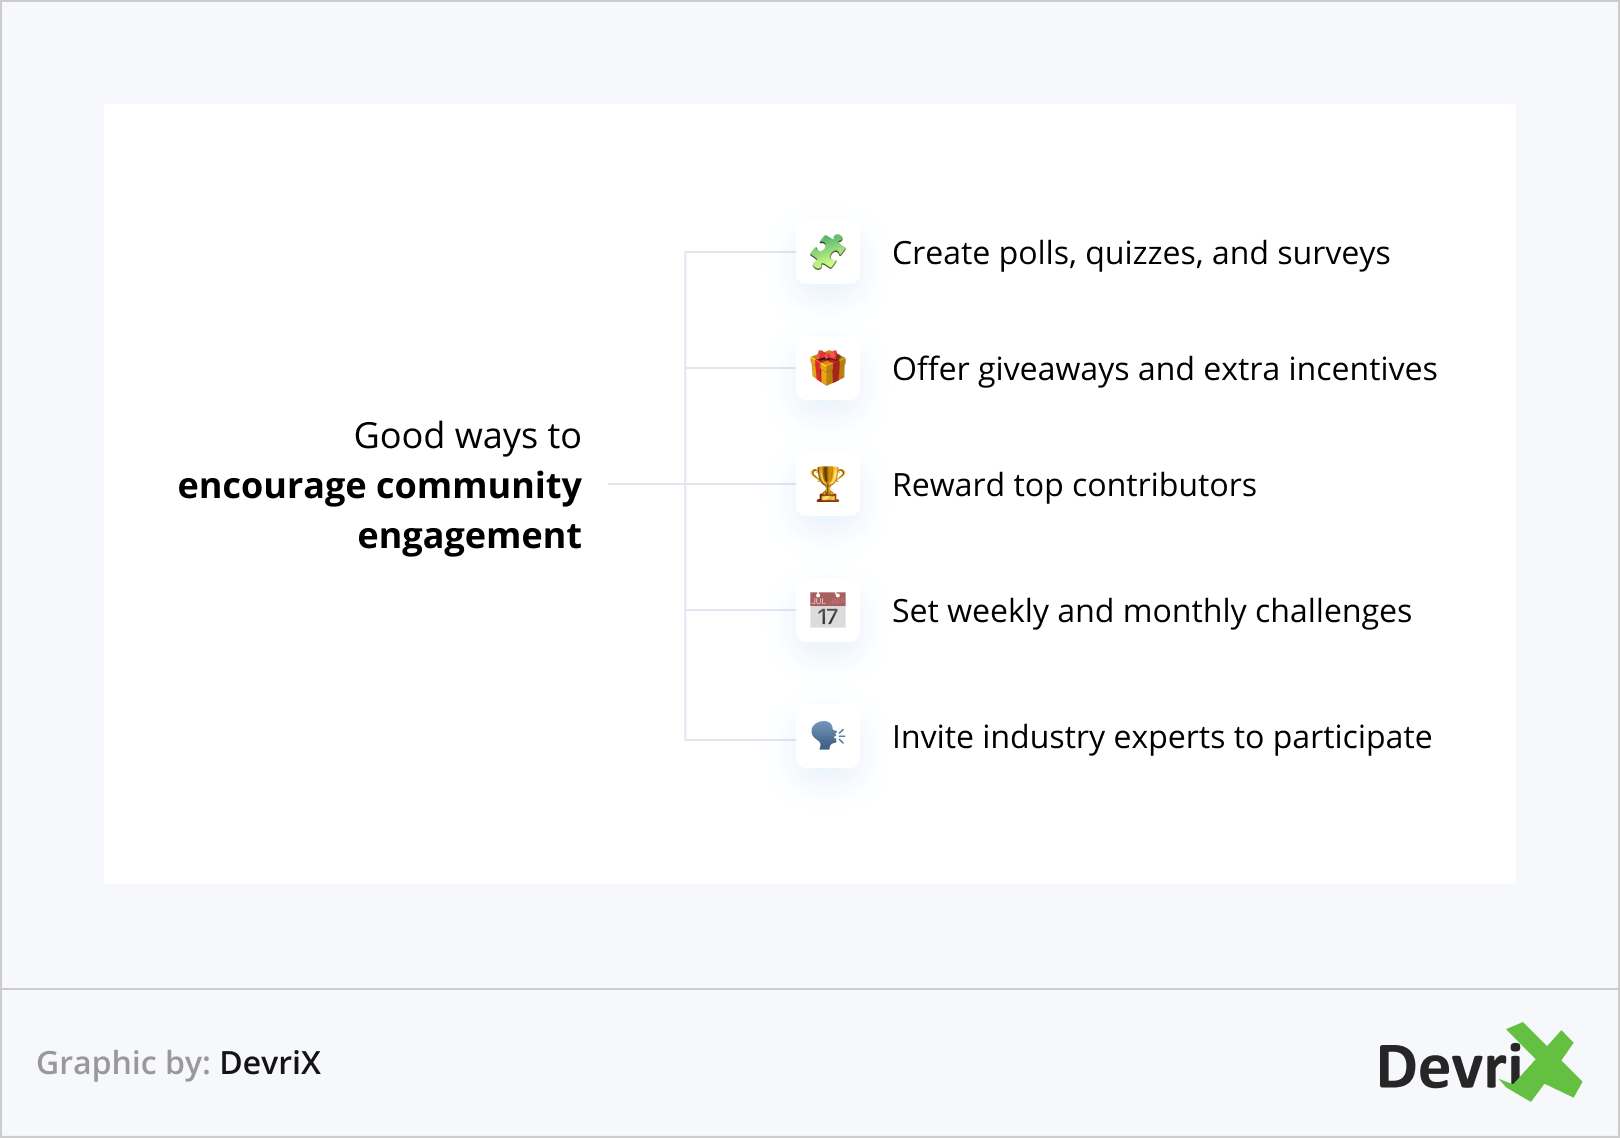 Good ways to encourage community engagement